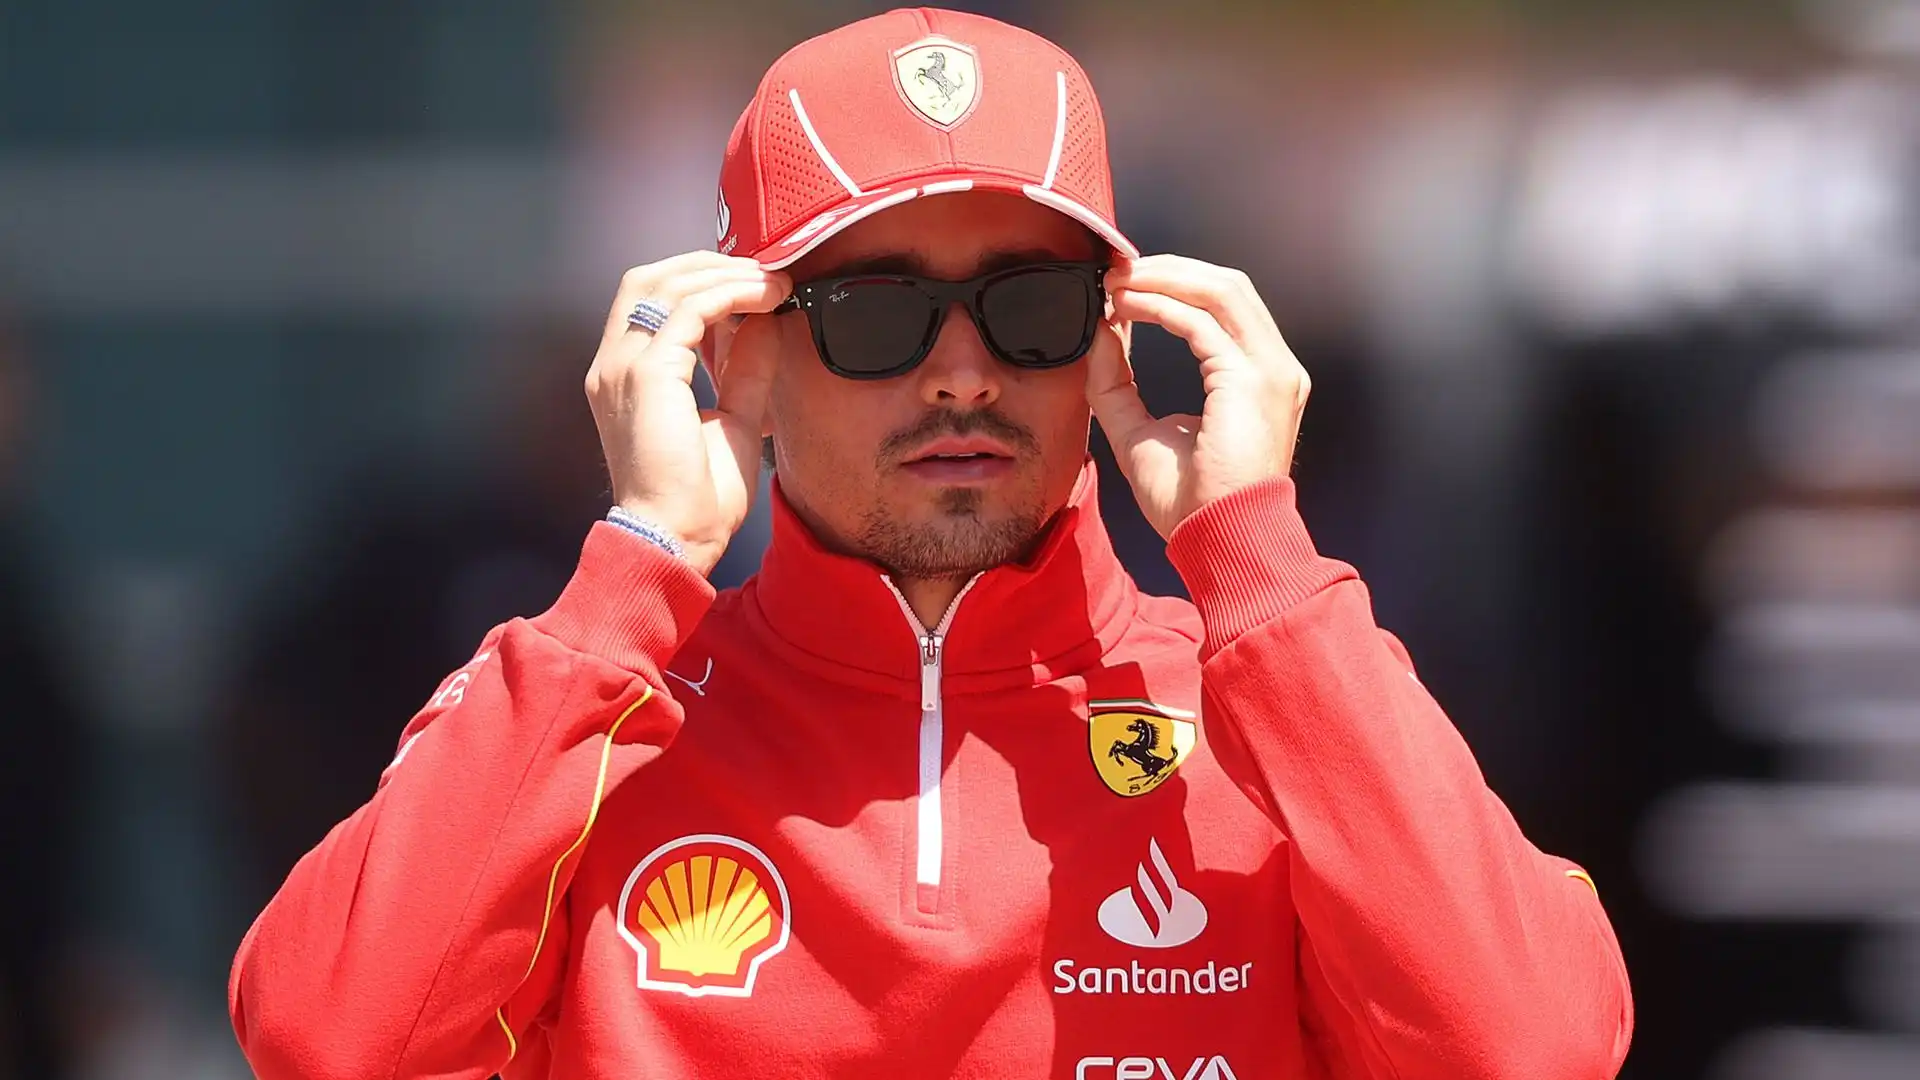 Secondo Villeneuve, il vero pilota sotto pressione non sarà Lewis Hamilton, ma lo stesso Leclerc